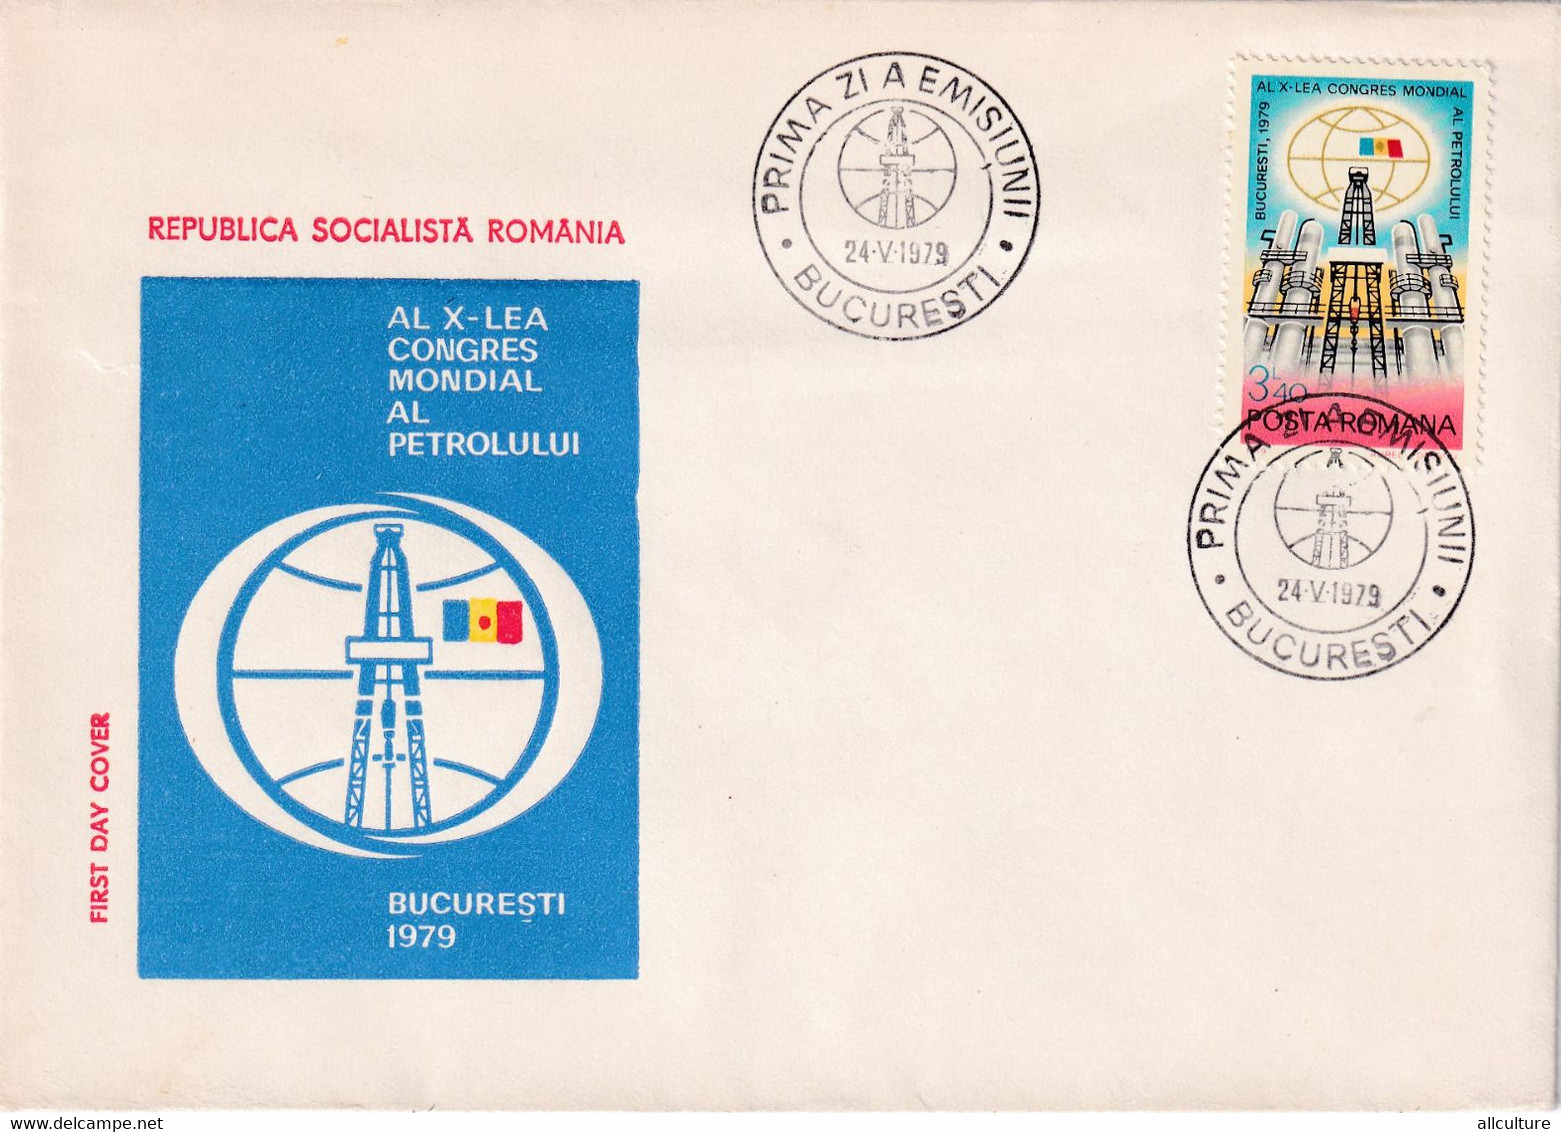 A2748 - Al 10-lea Congres Mondial Al Petrolului, Republica Socialista Romania, Bucuresti 1979 FDC - FDC